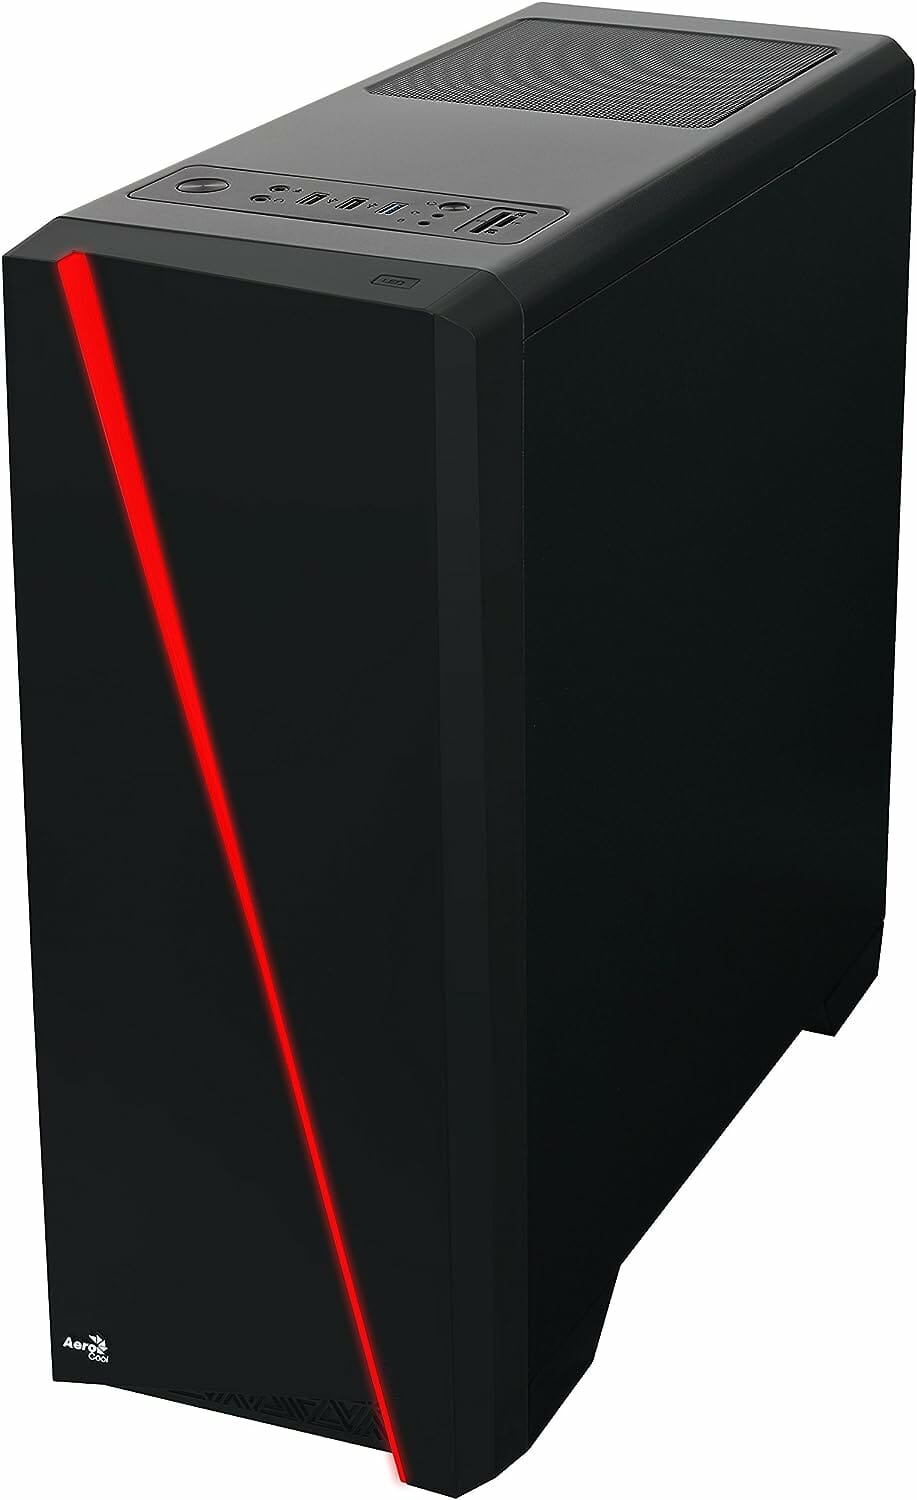 Ein schwarzes Computergehäuse mit einem roten Streifen.